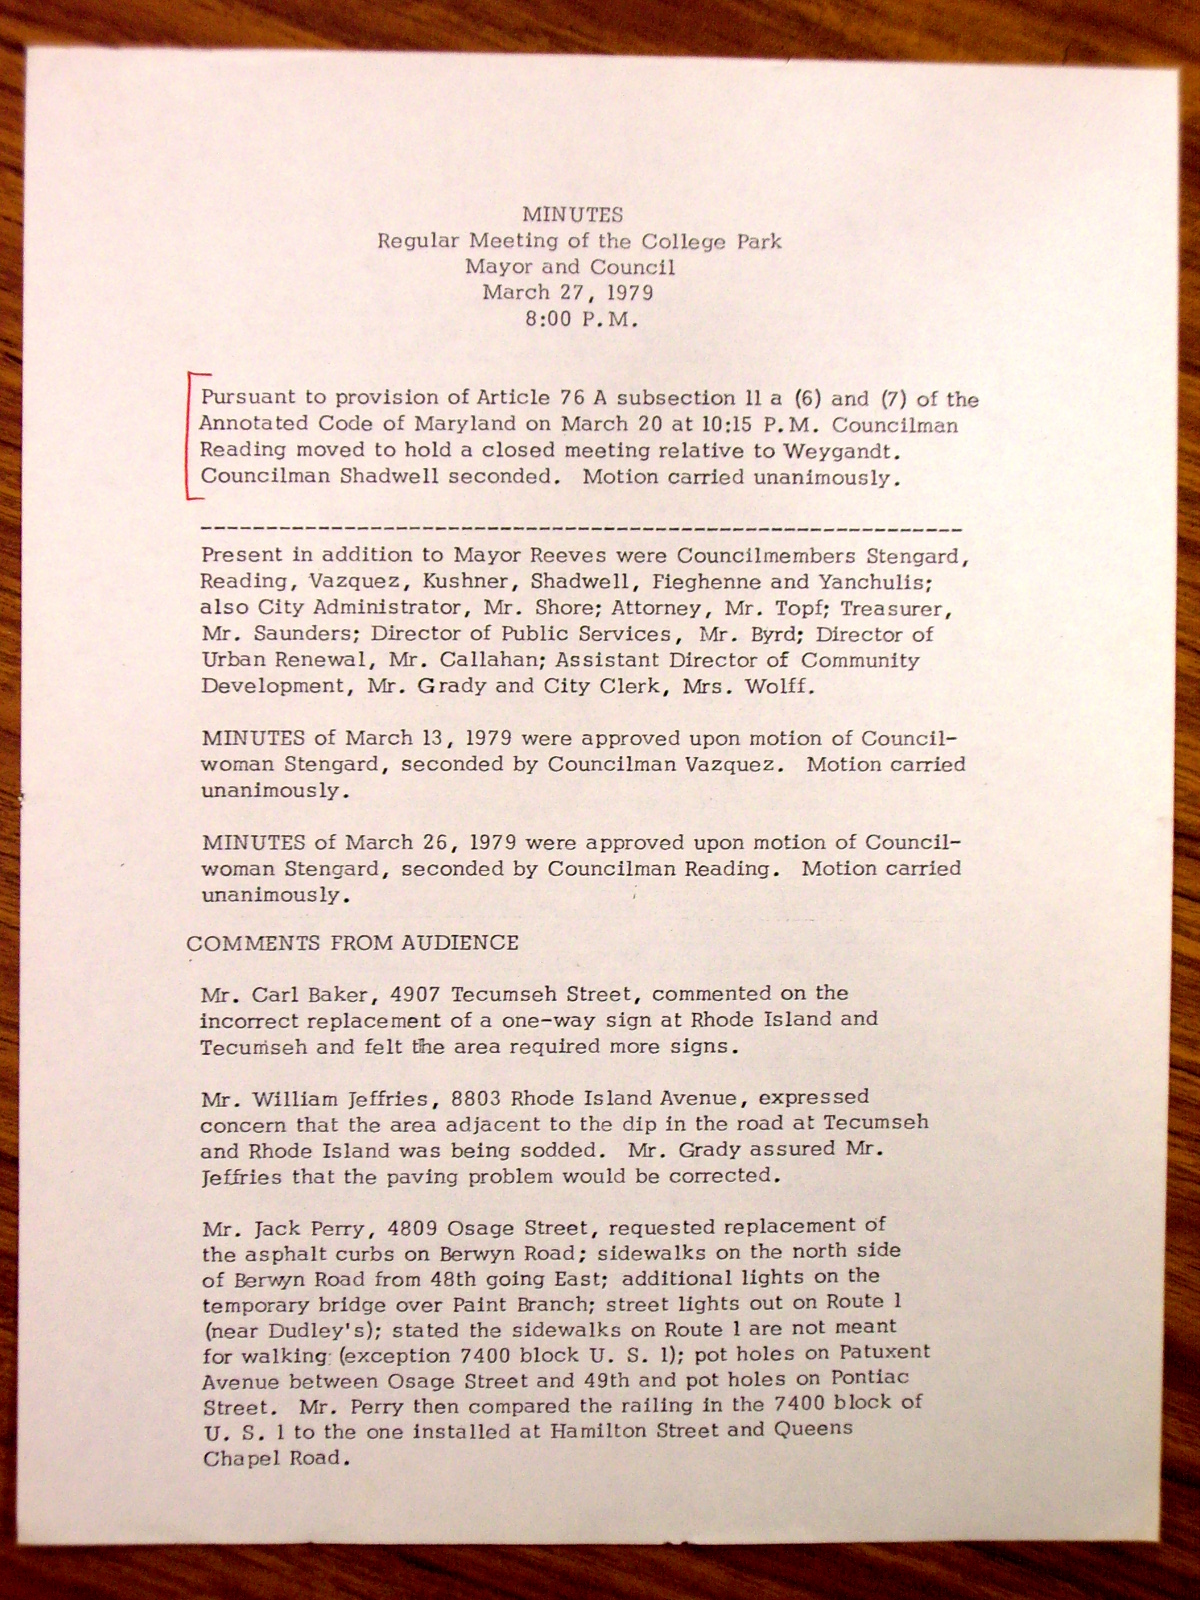 College Park City Council Minutes March 27, 1979